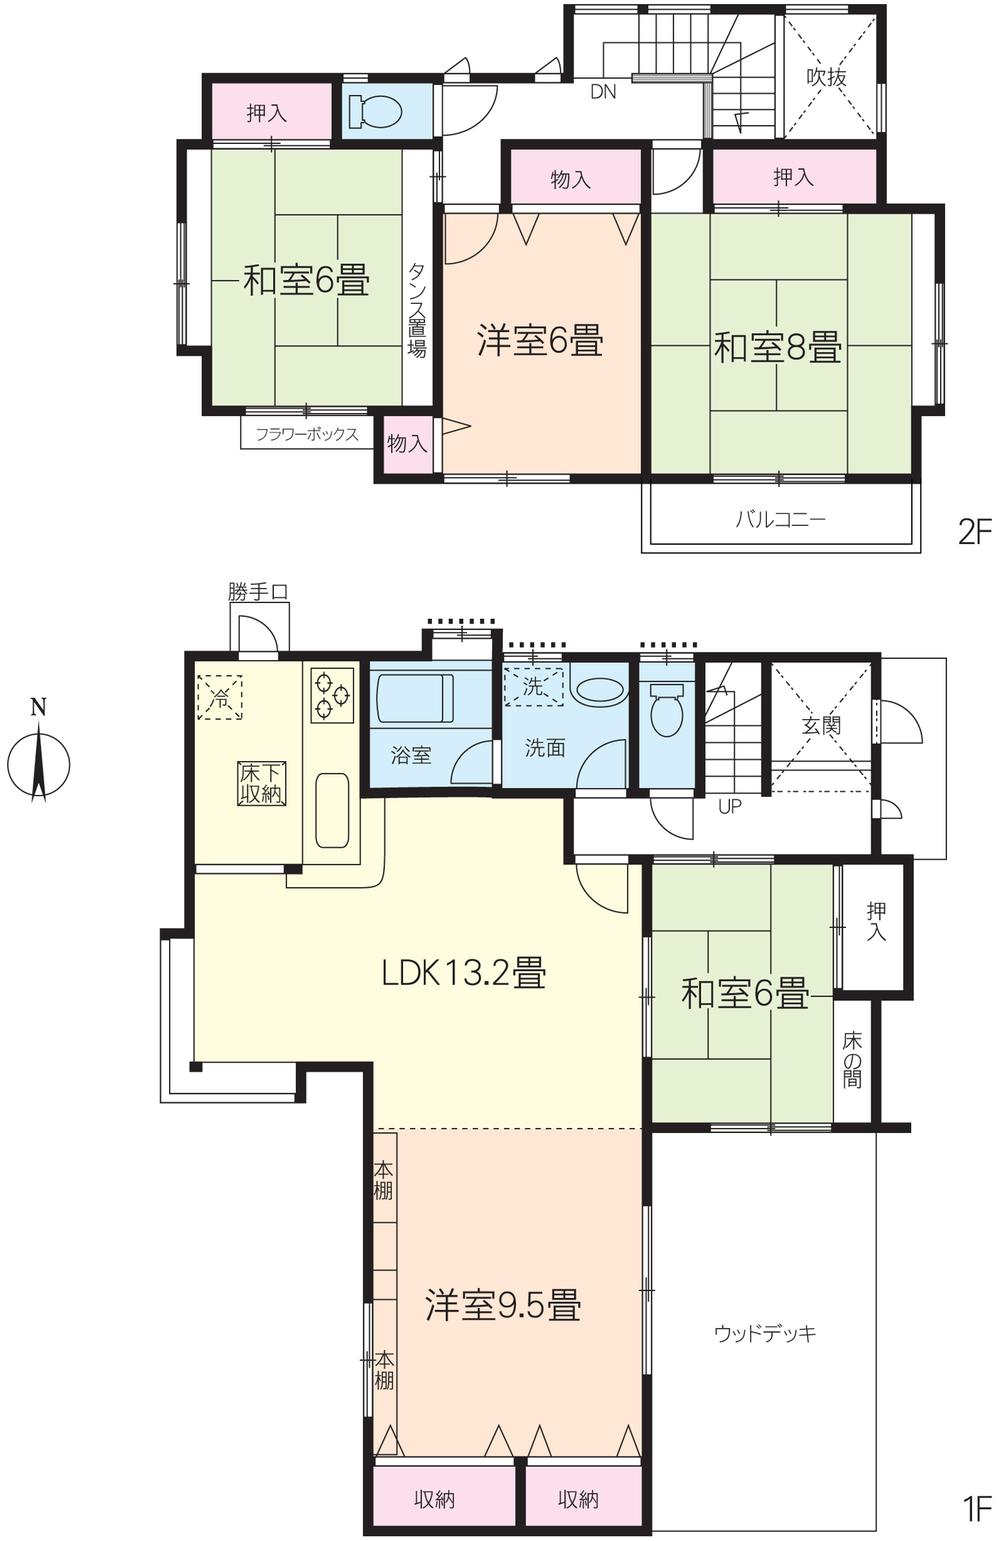 Floor plan. 13.5 million yen, 5LDK, Land area 220.25 sq m , Building area 107.23 sq m